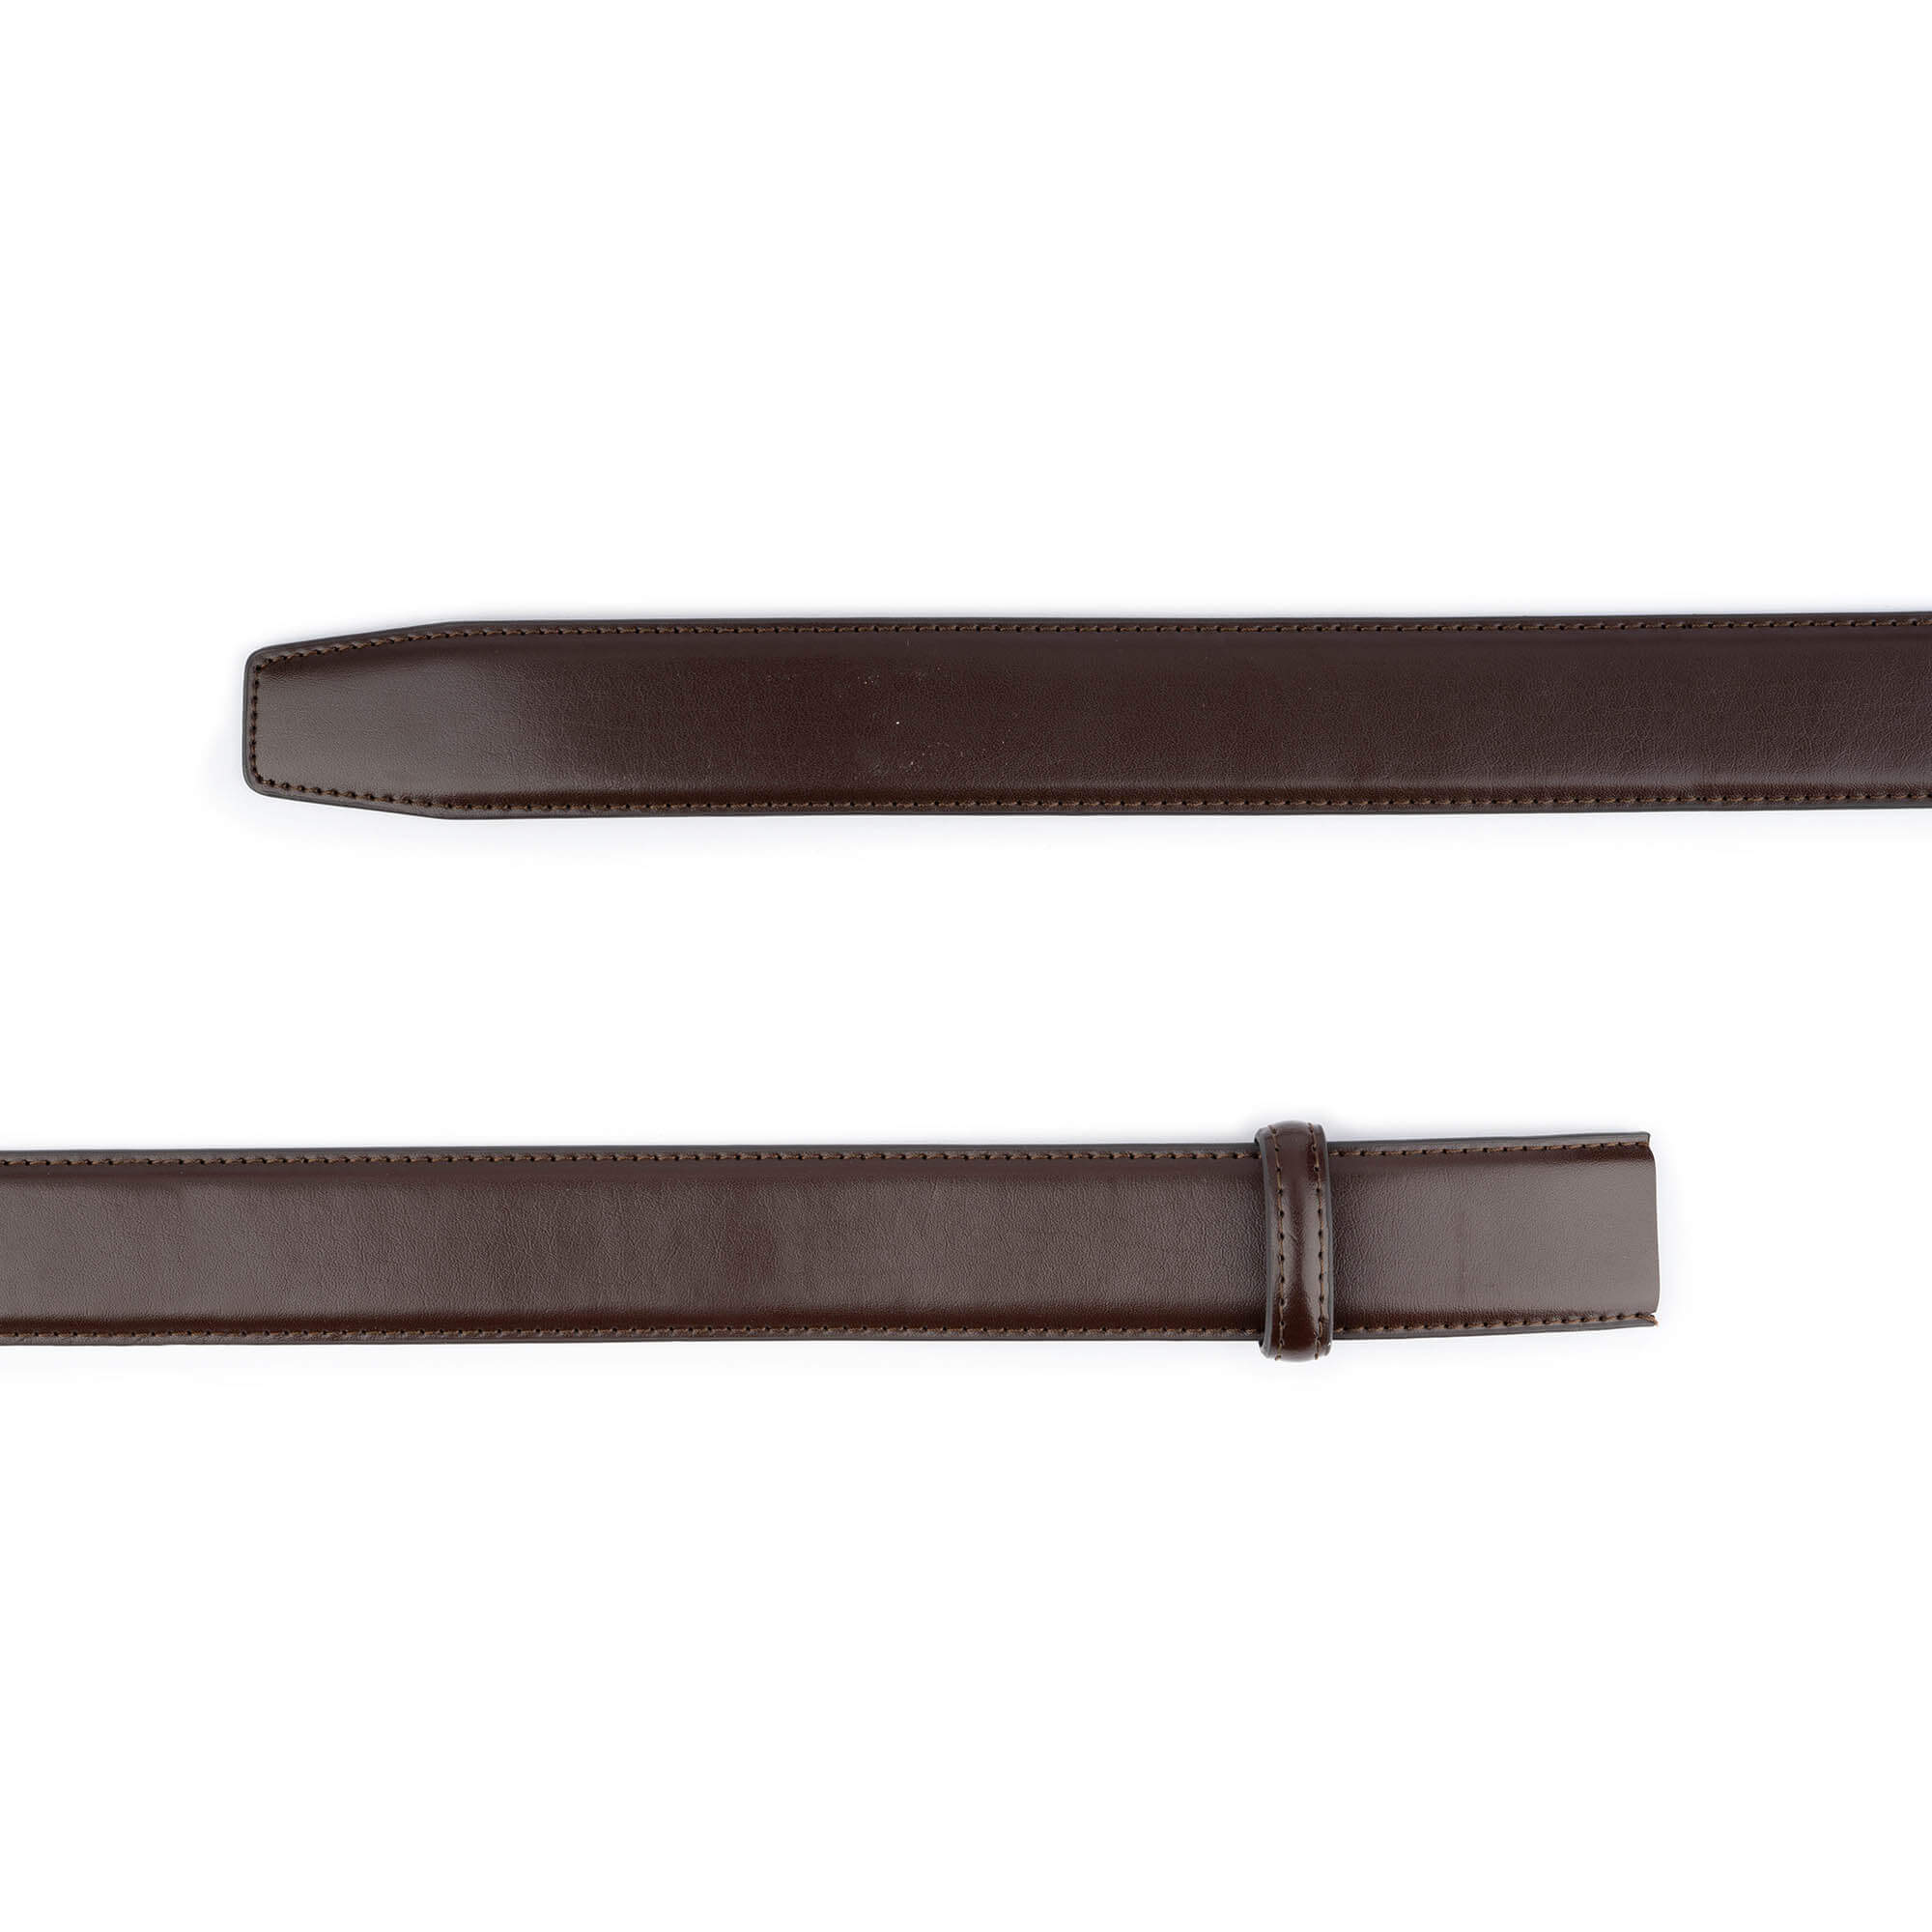 Buy Ratchet Vegan Belt Strap Replacement - Dark Brown 3.5 Cm